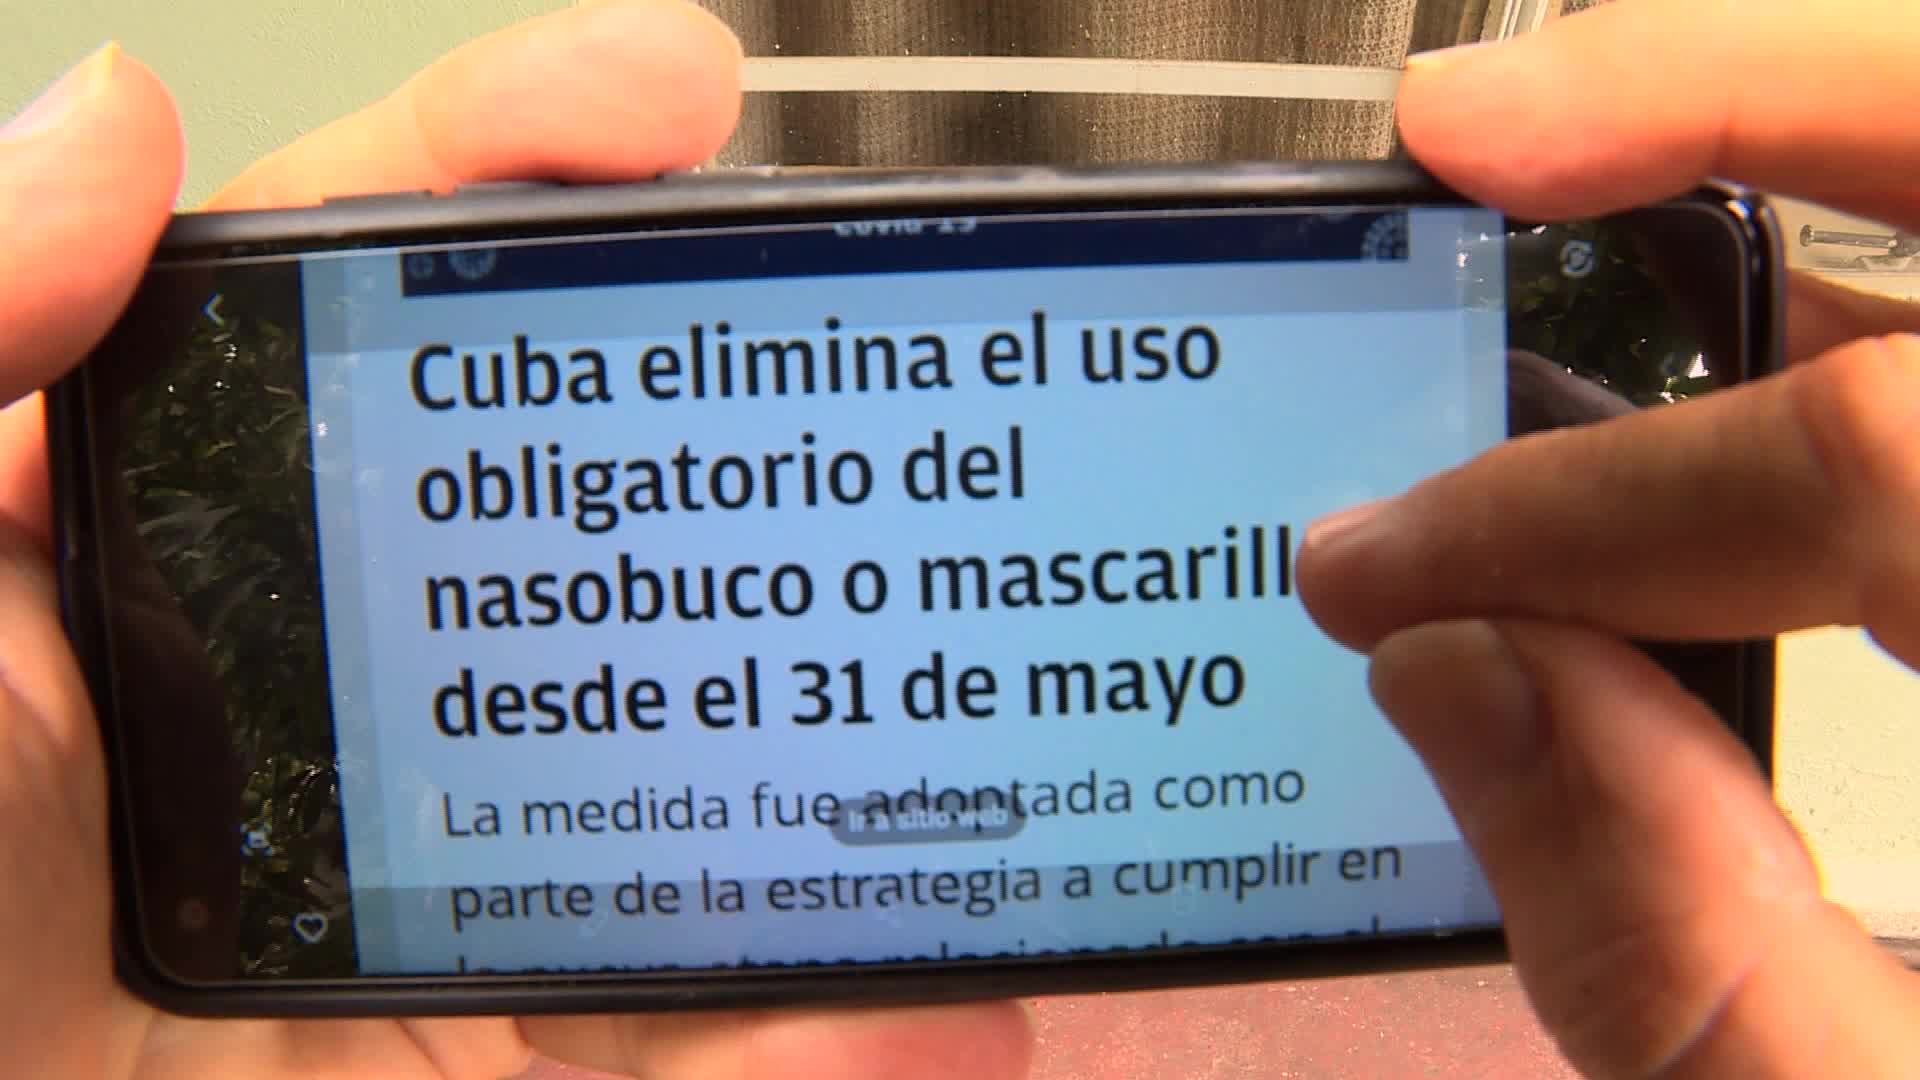 Cuba elimina uso obligatorio de mascarilla sanitaria en lugares públicos